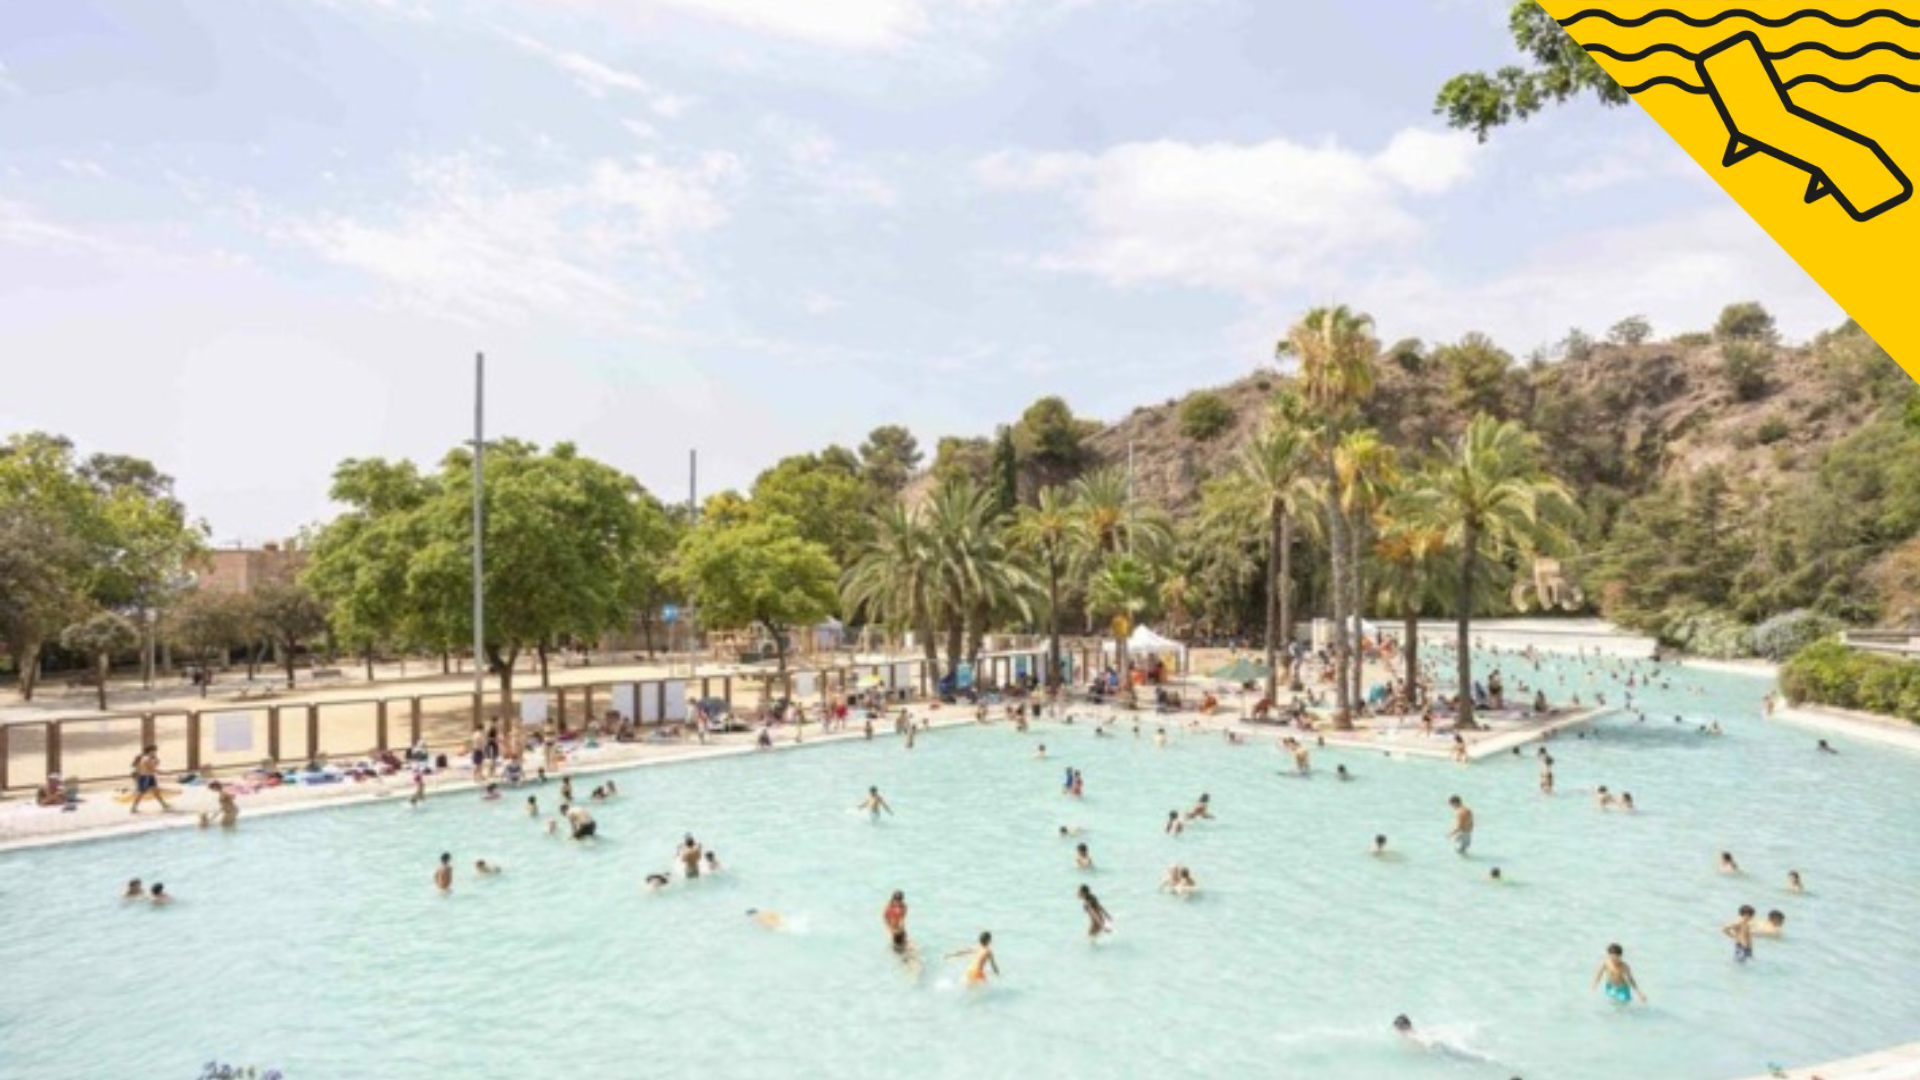 Aquesta és la piscina més barata per refrescar-te a Barcelona i és ideal per a nens: la coneixes?